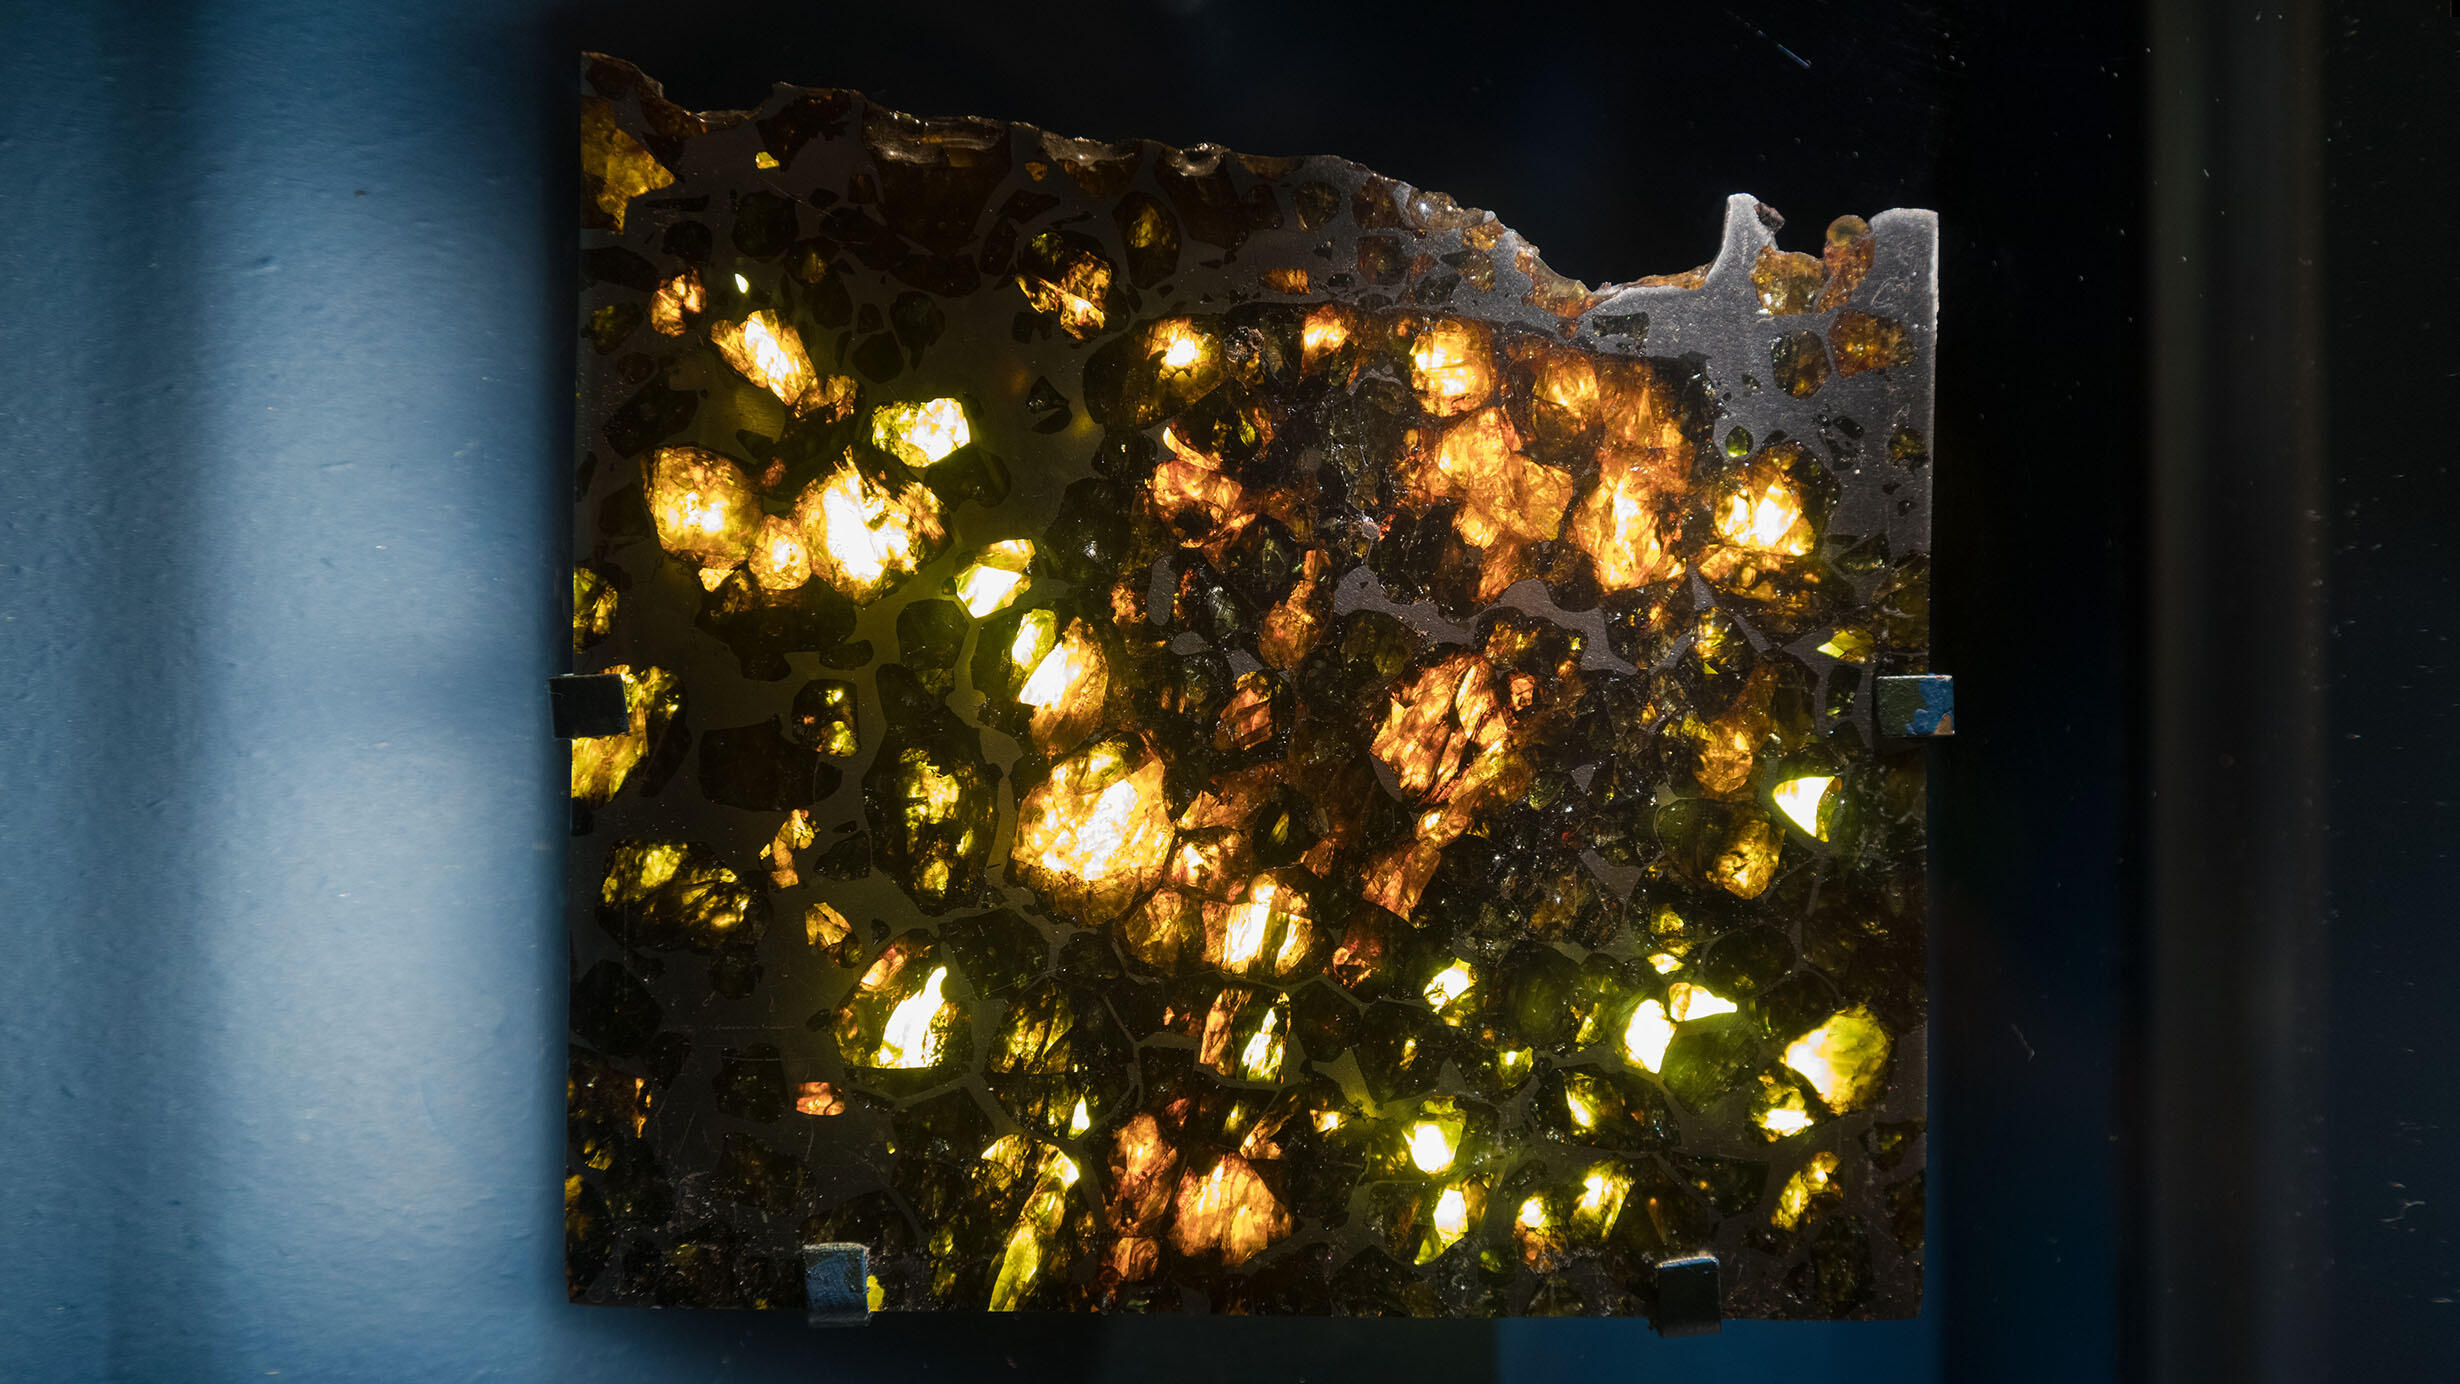 Esquel meteorite showing translucent areas.